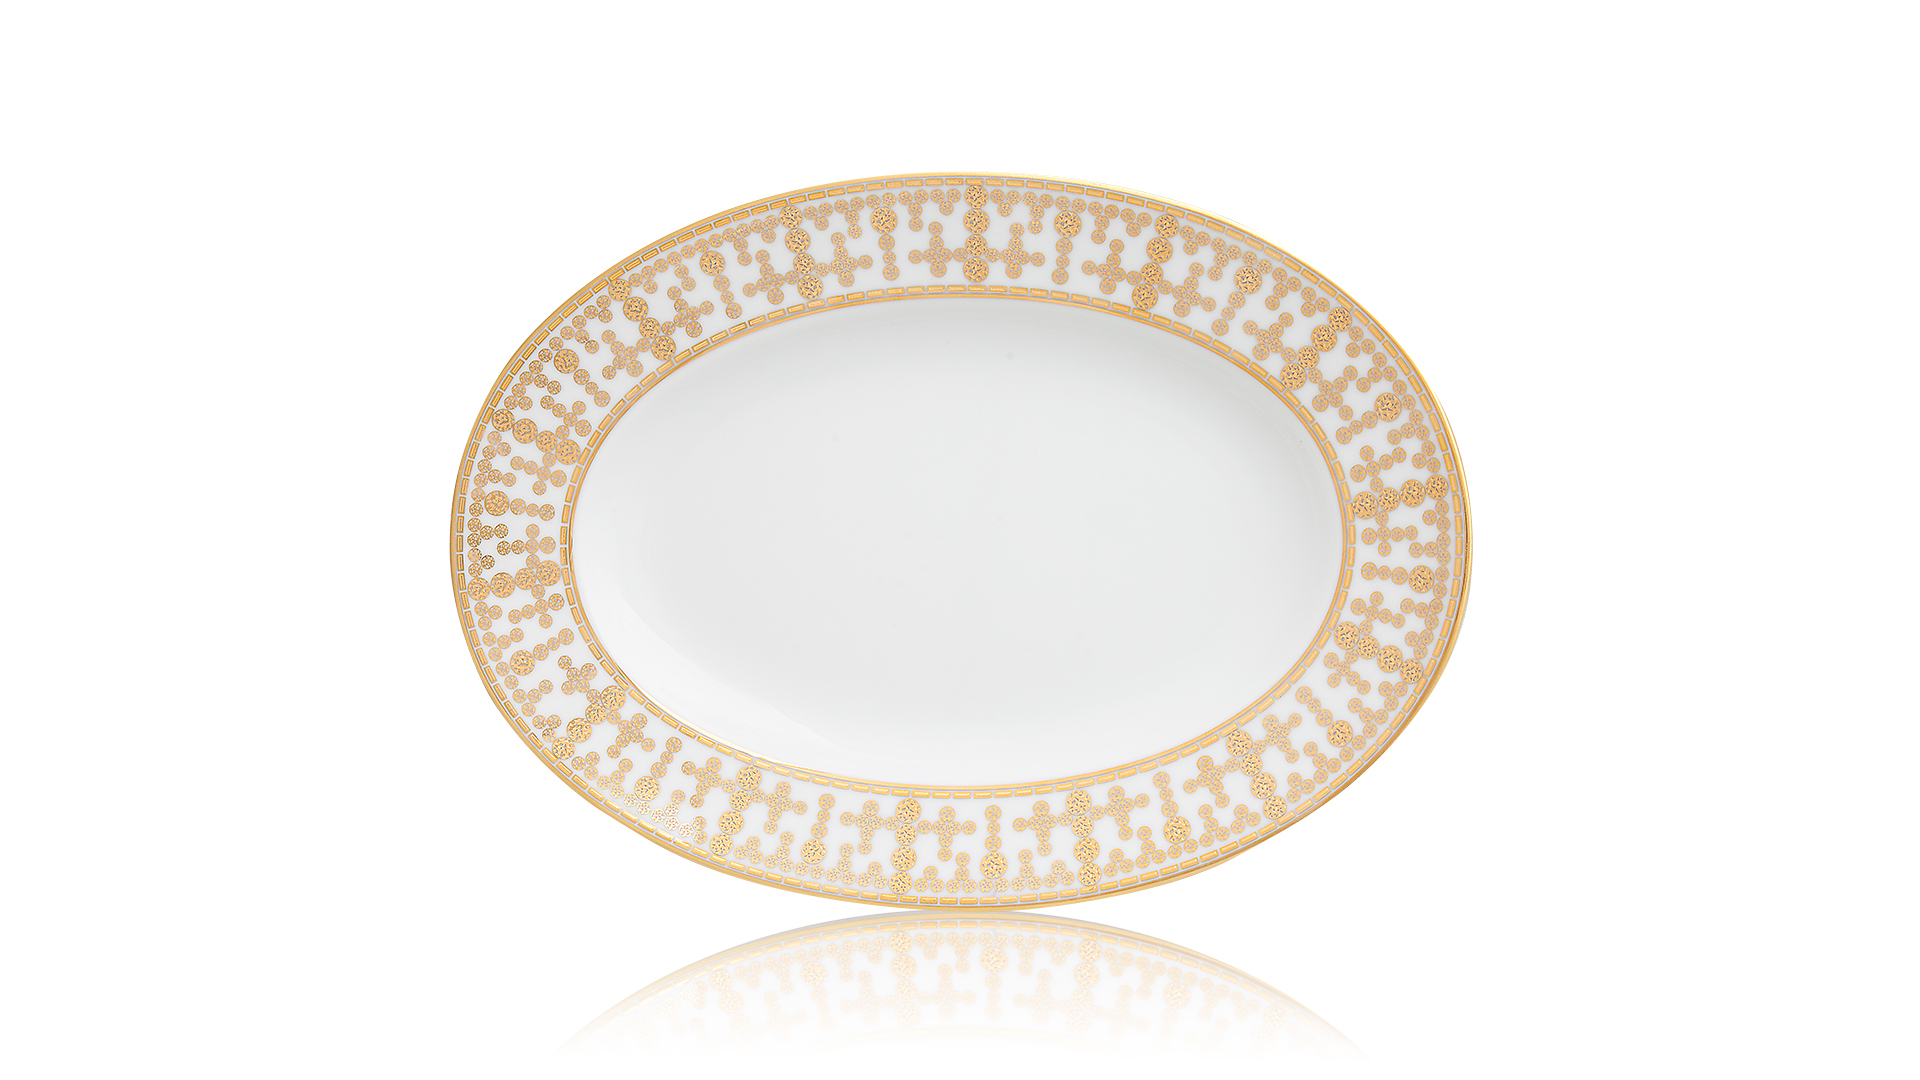 Блюдо овальное Haviland Тиара 23,5 см, белый, золотой декор